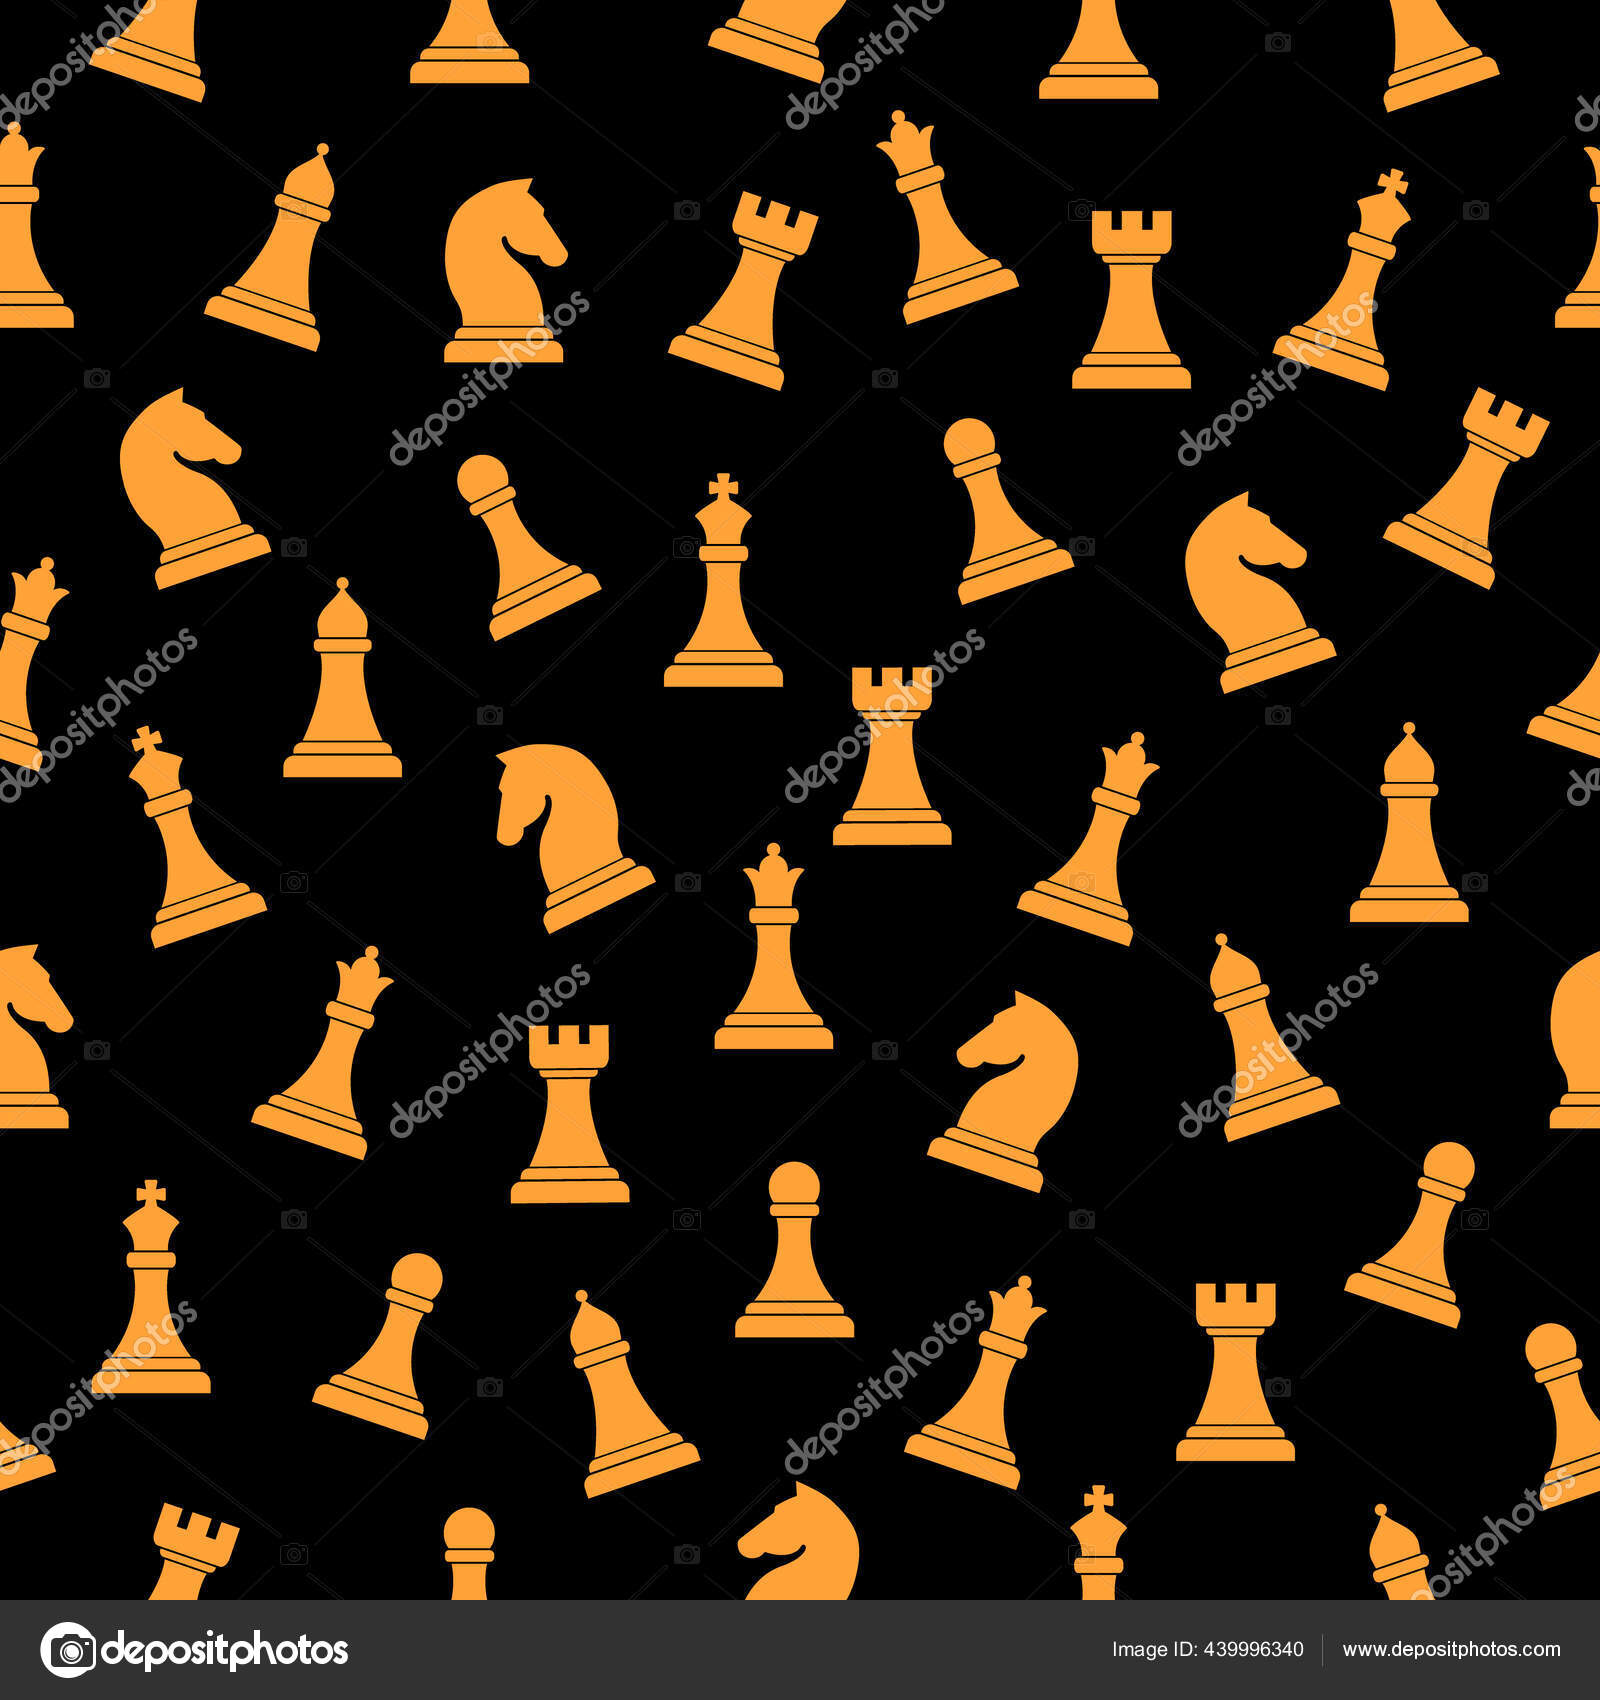 Ícones de peças de xadrez com nomes. jogo de tabuleiro. silhuetas